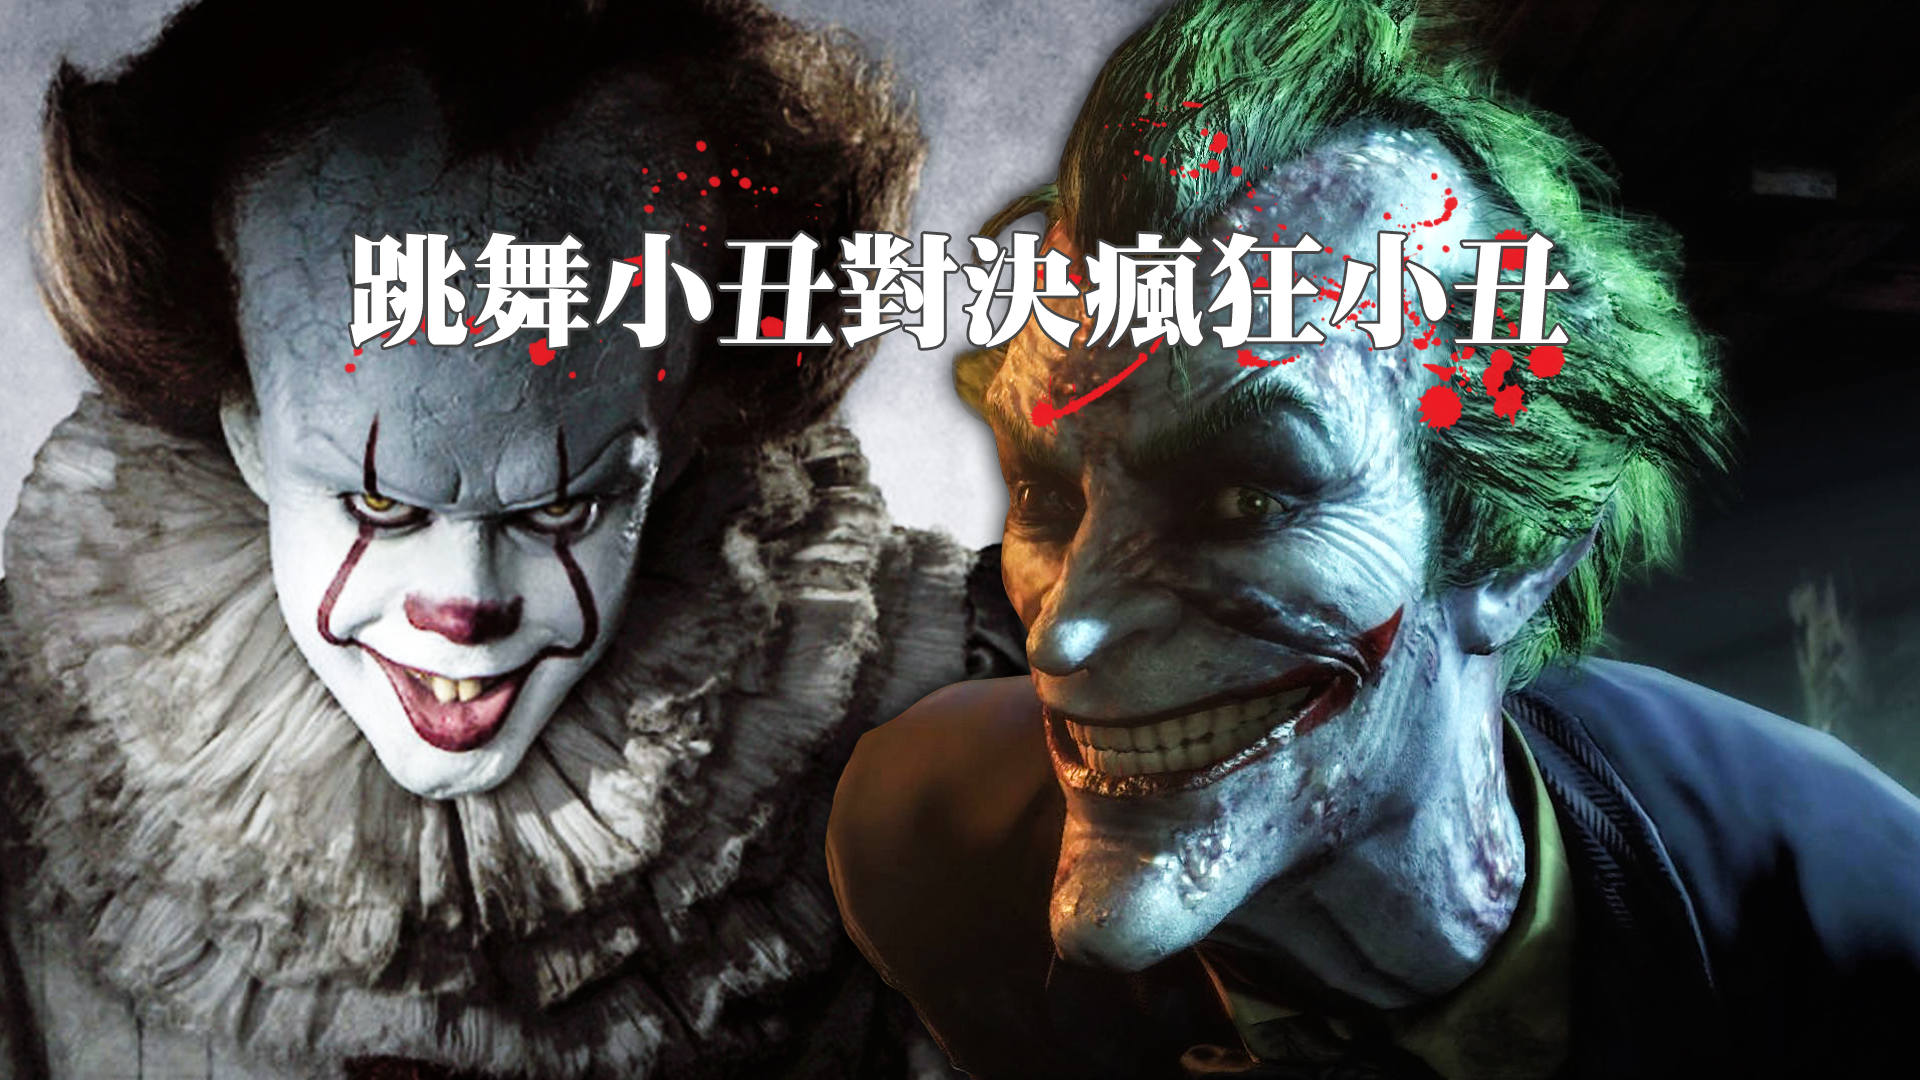 Clown vs Joker